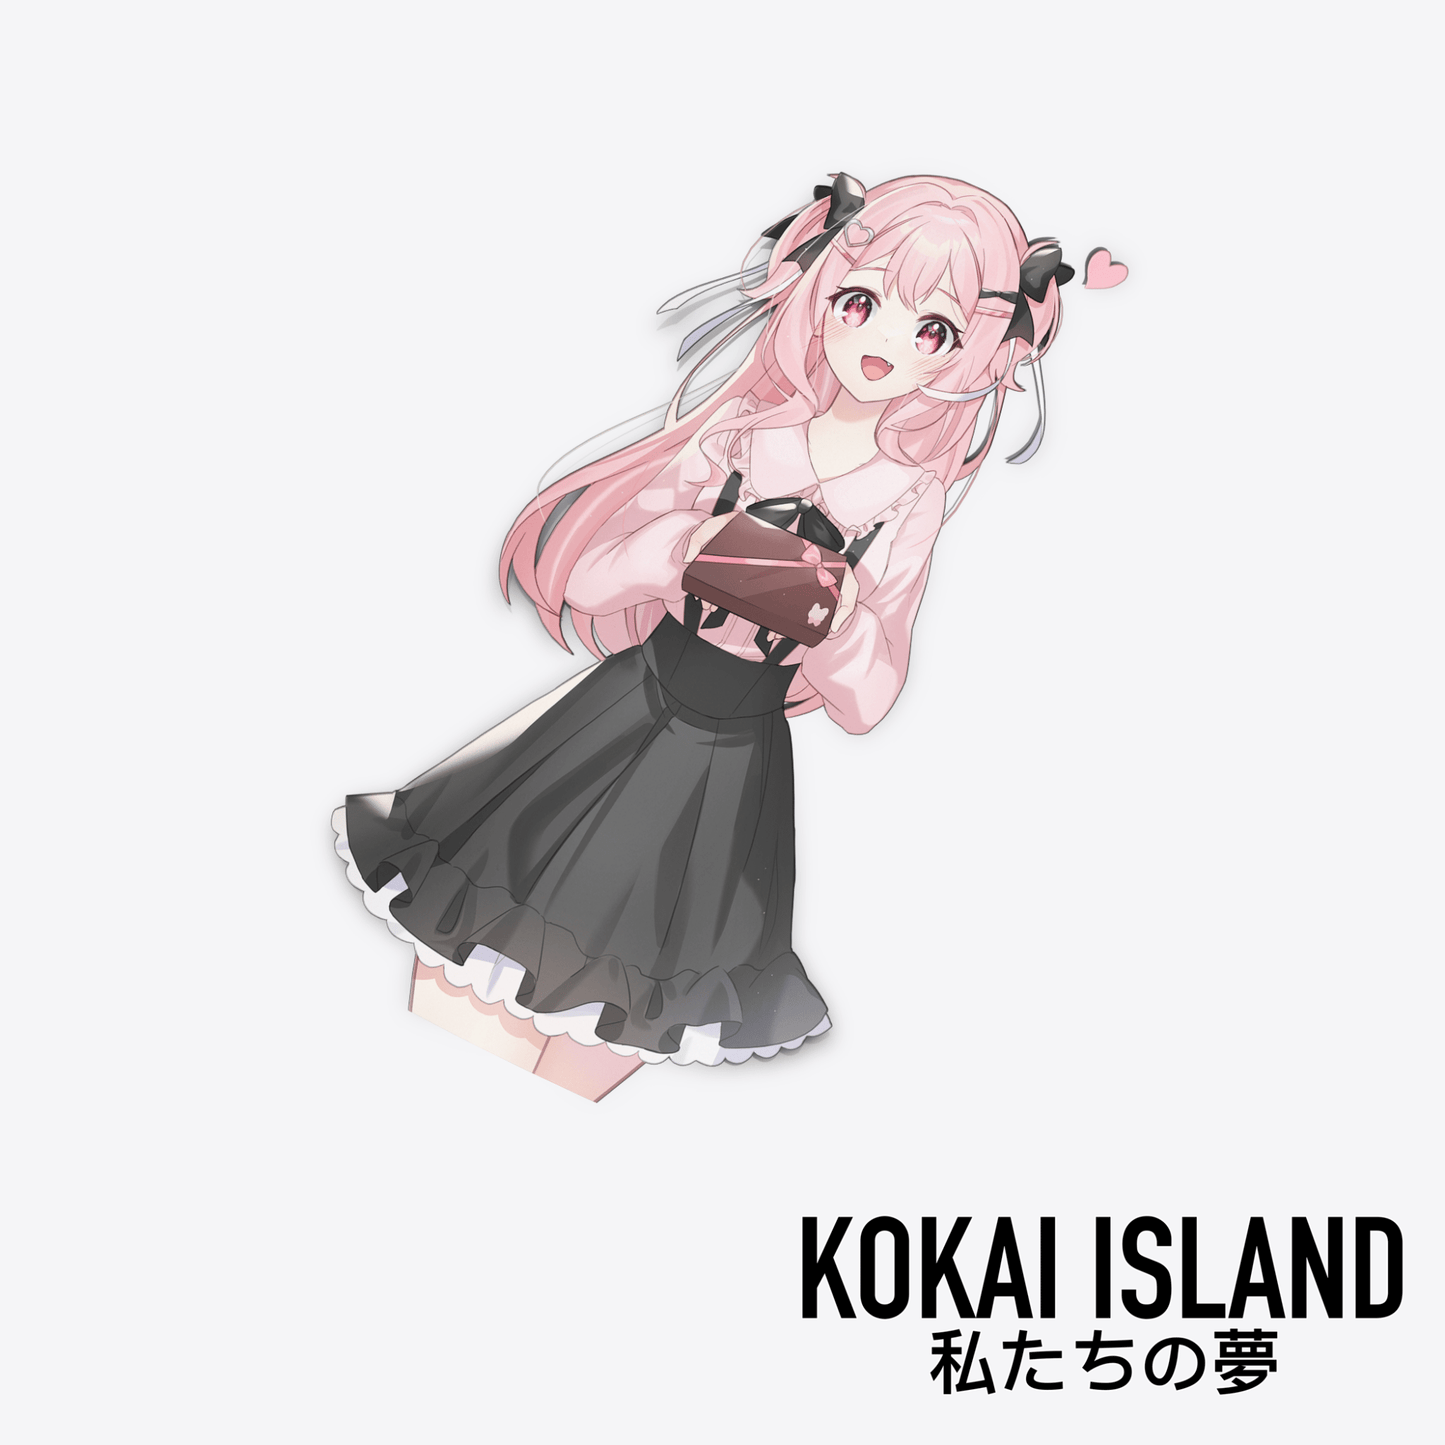 Kai V-day DecalDecalKokai Island